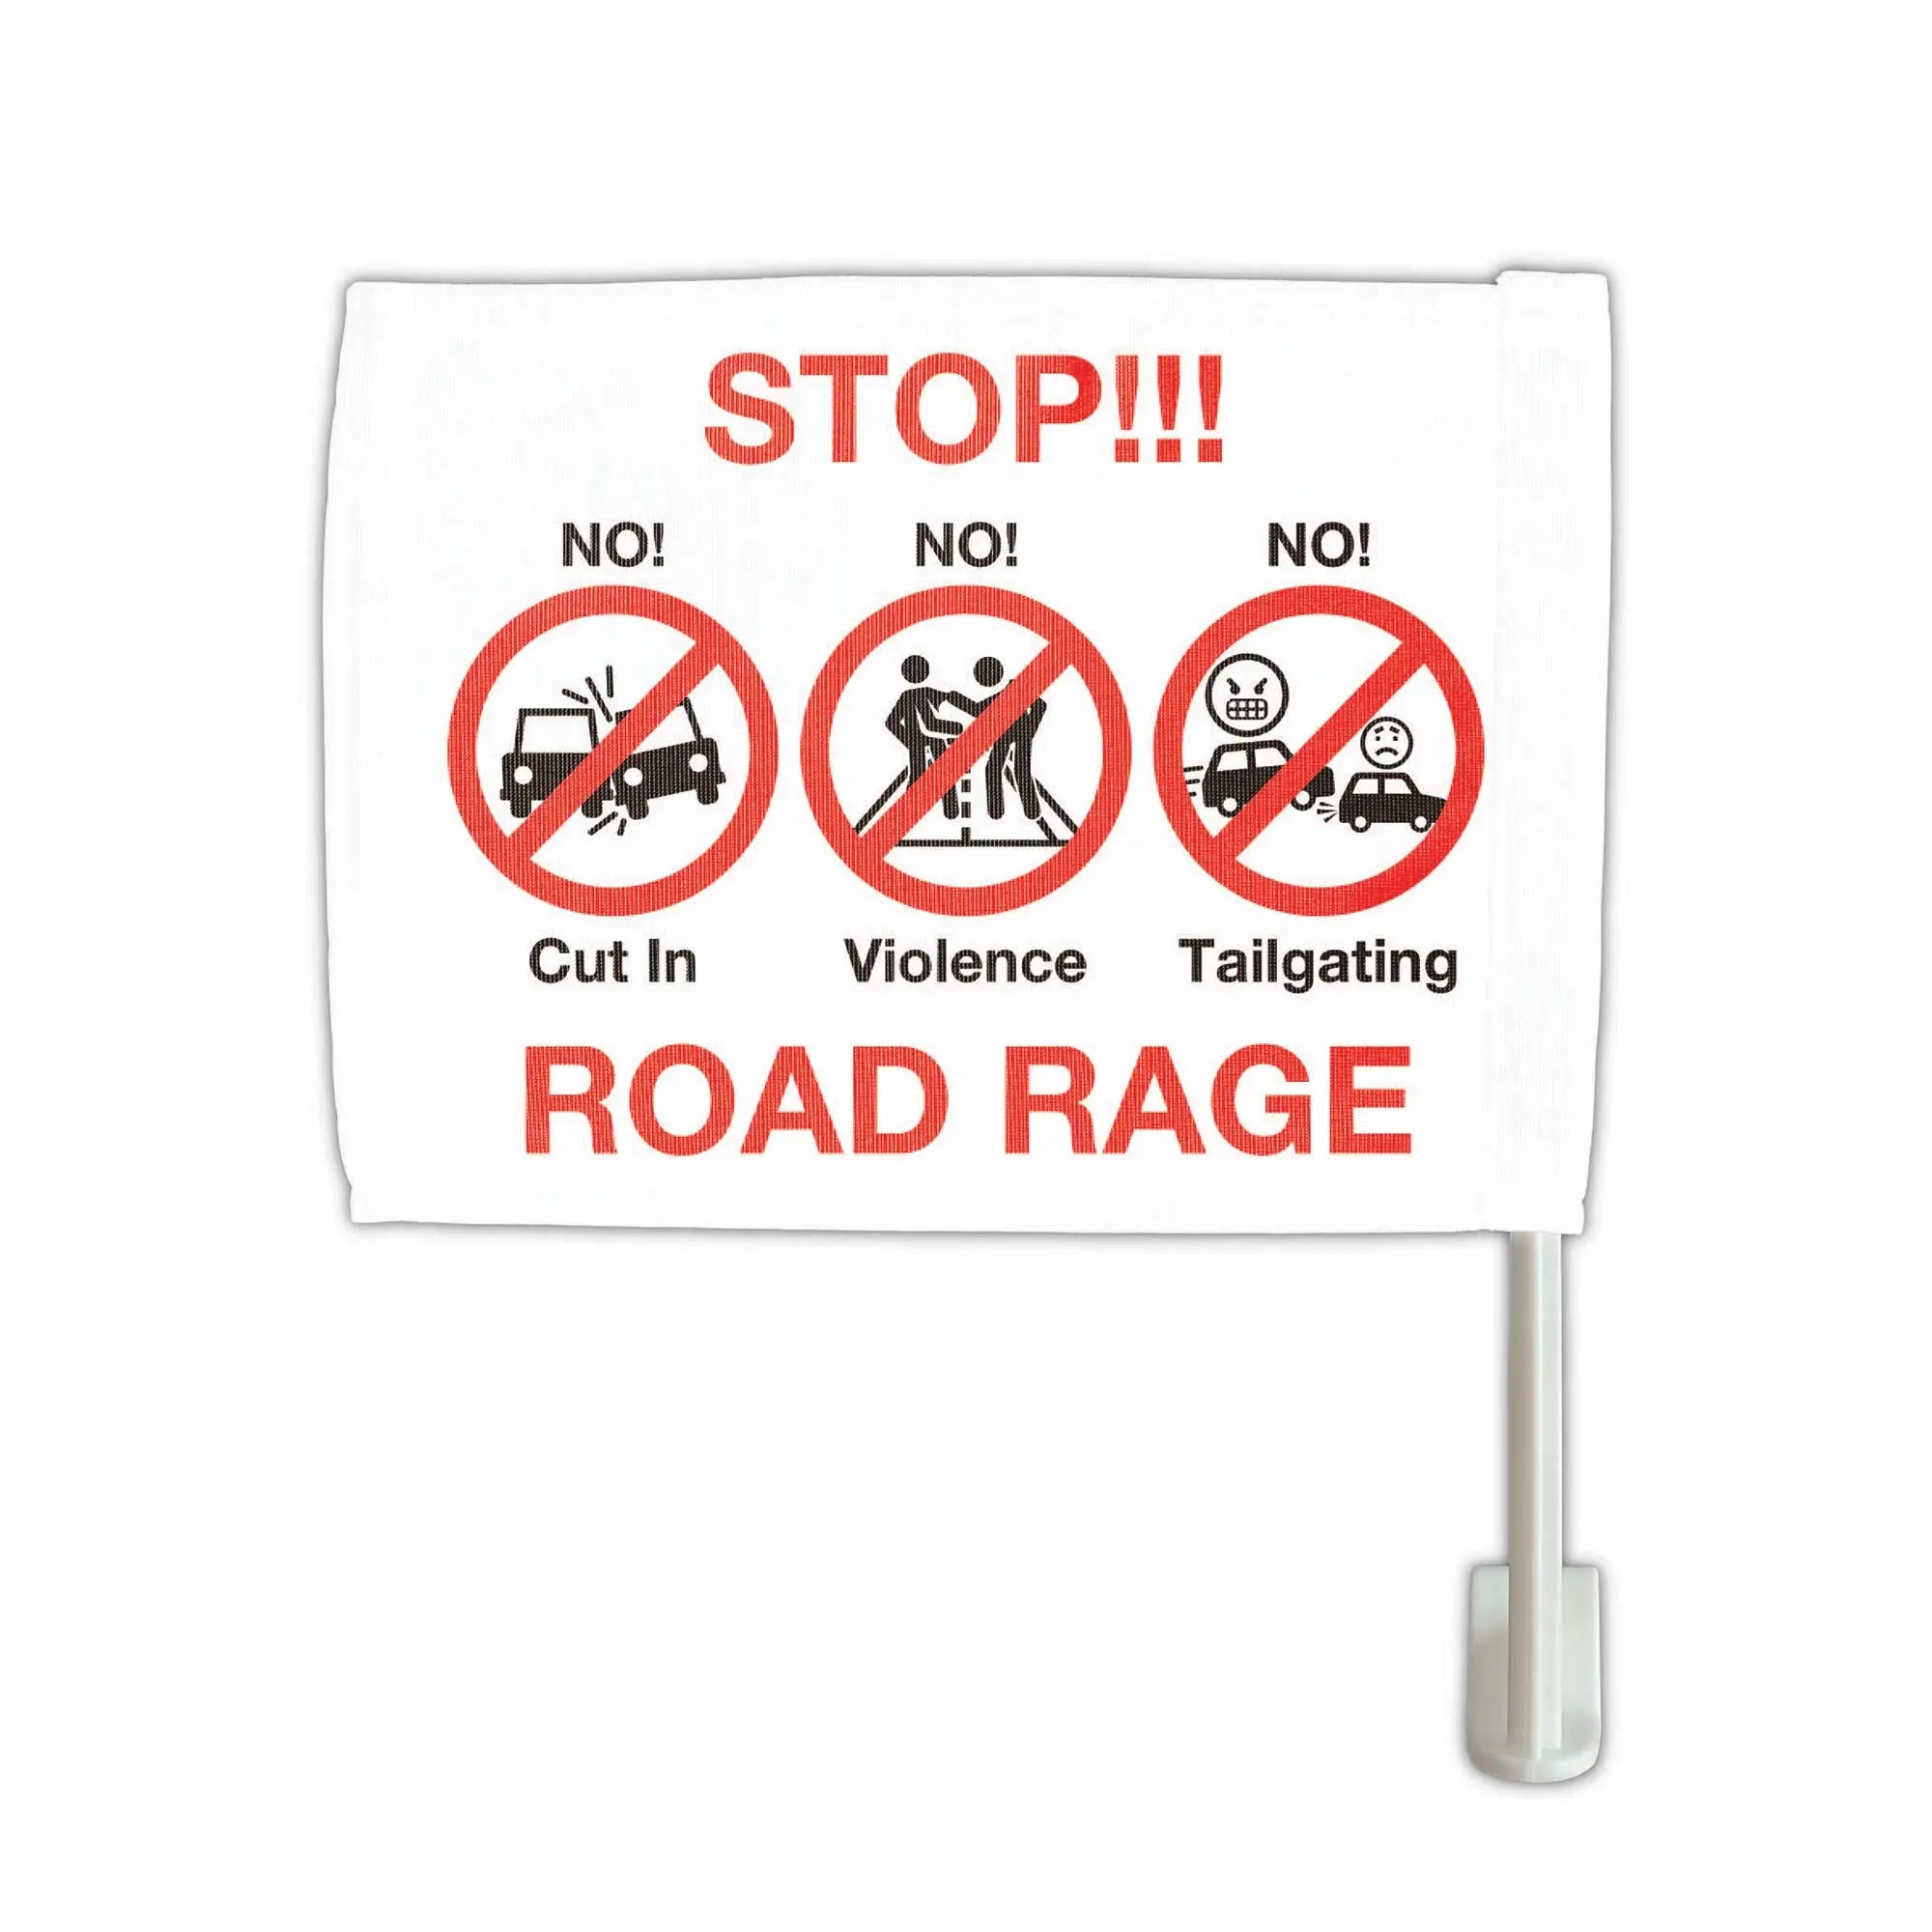 カーフラッグ】STOP ROAD RAGE/ストップ煽り運転/自動車用オリジナルフラッグ・旗 PL8HERO(プレートヒーロー)